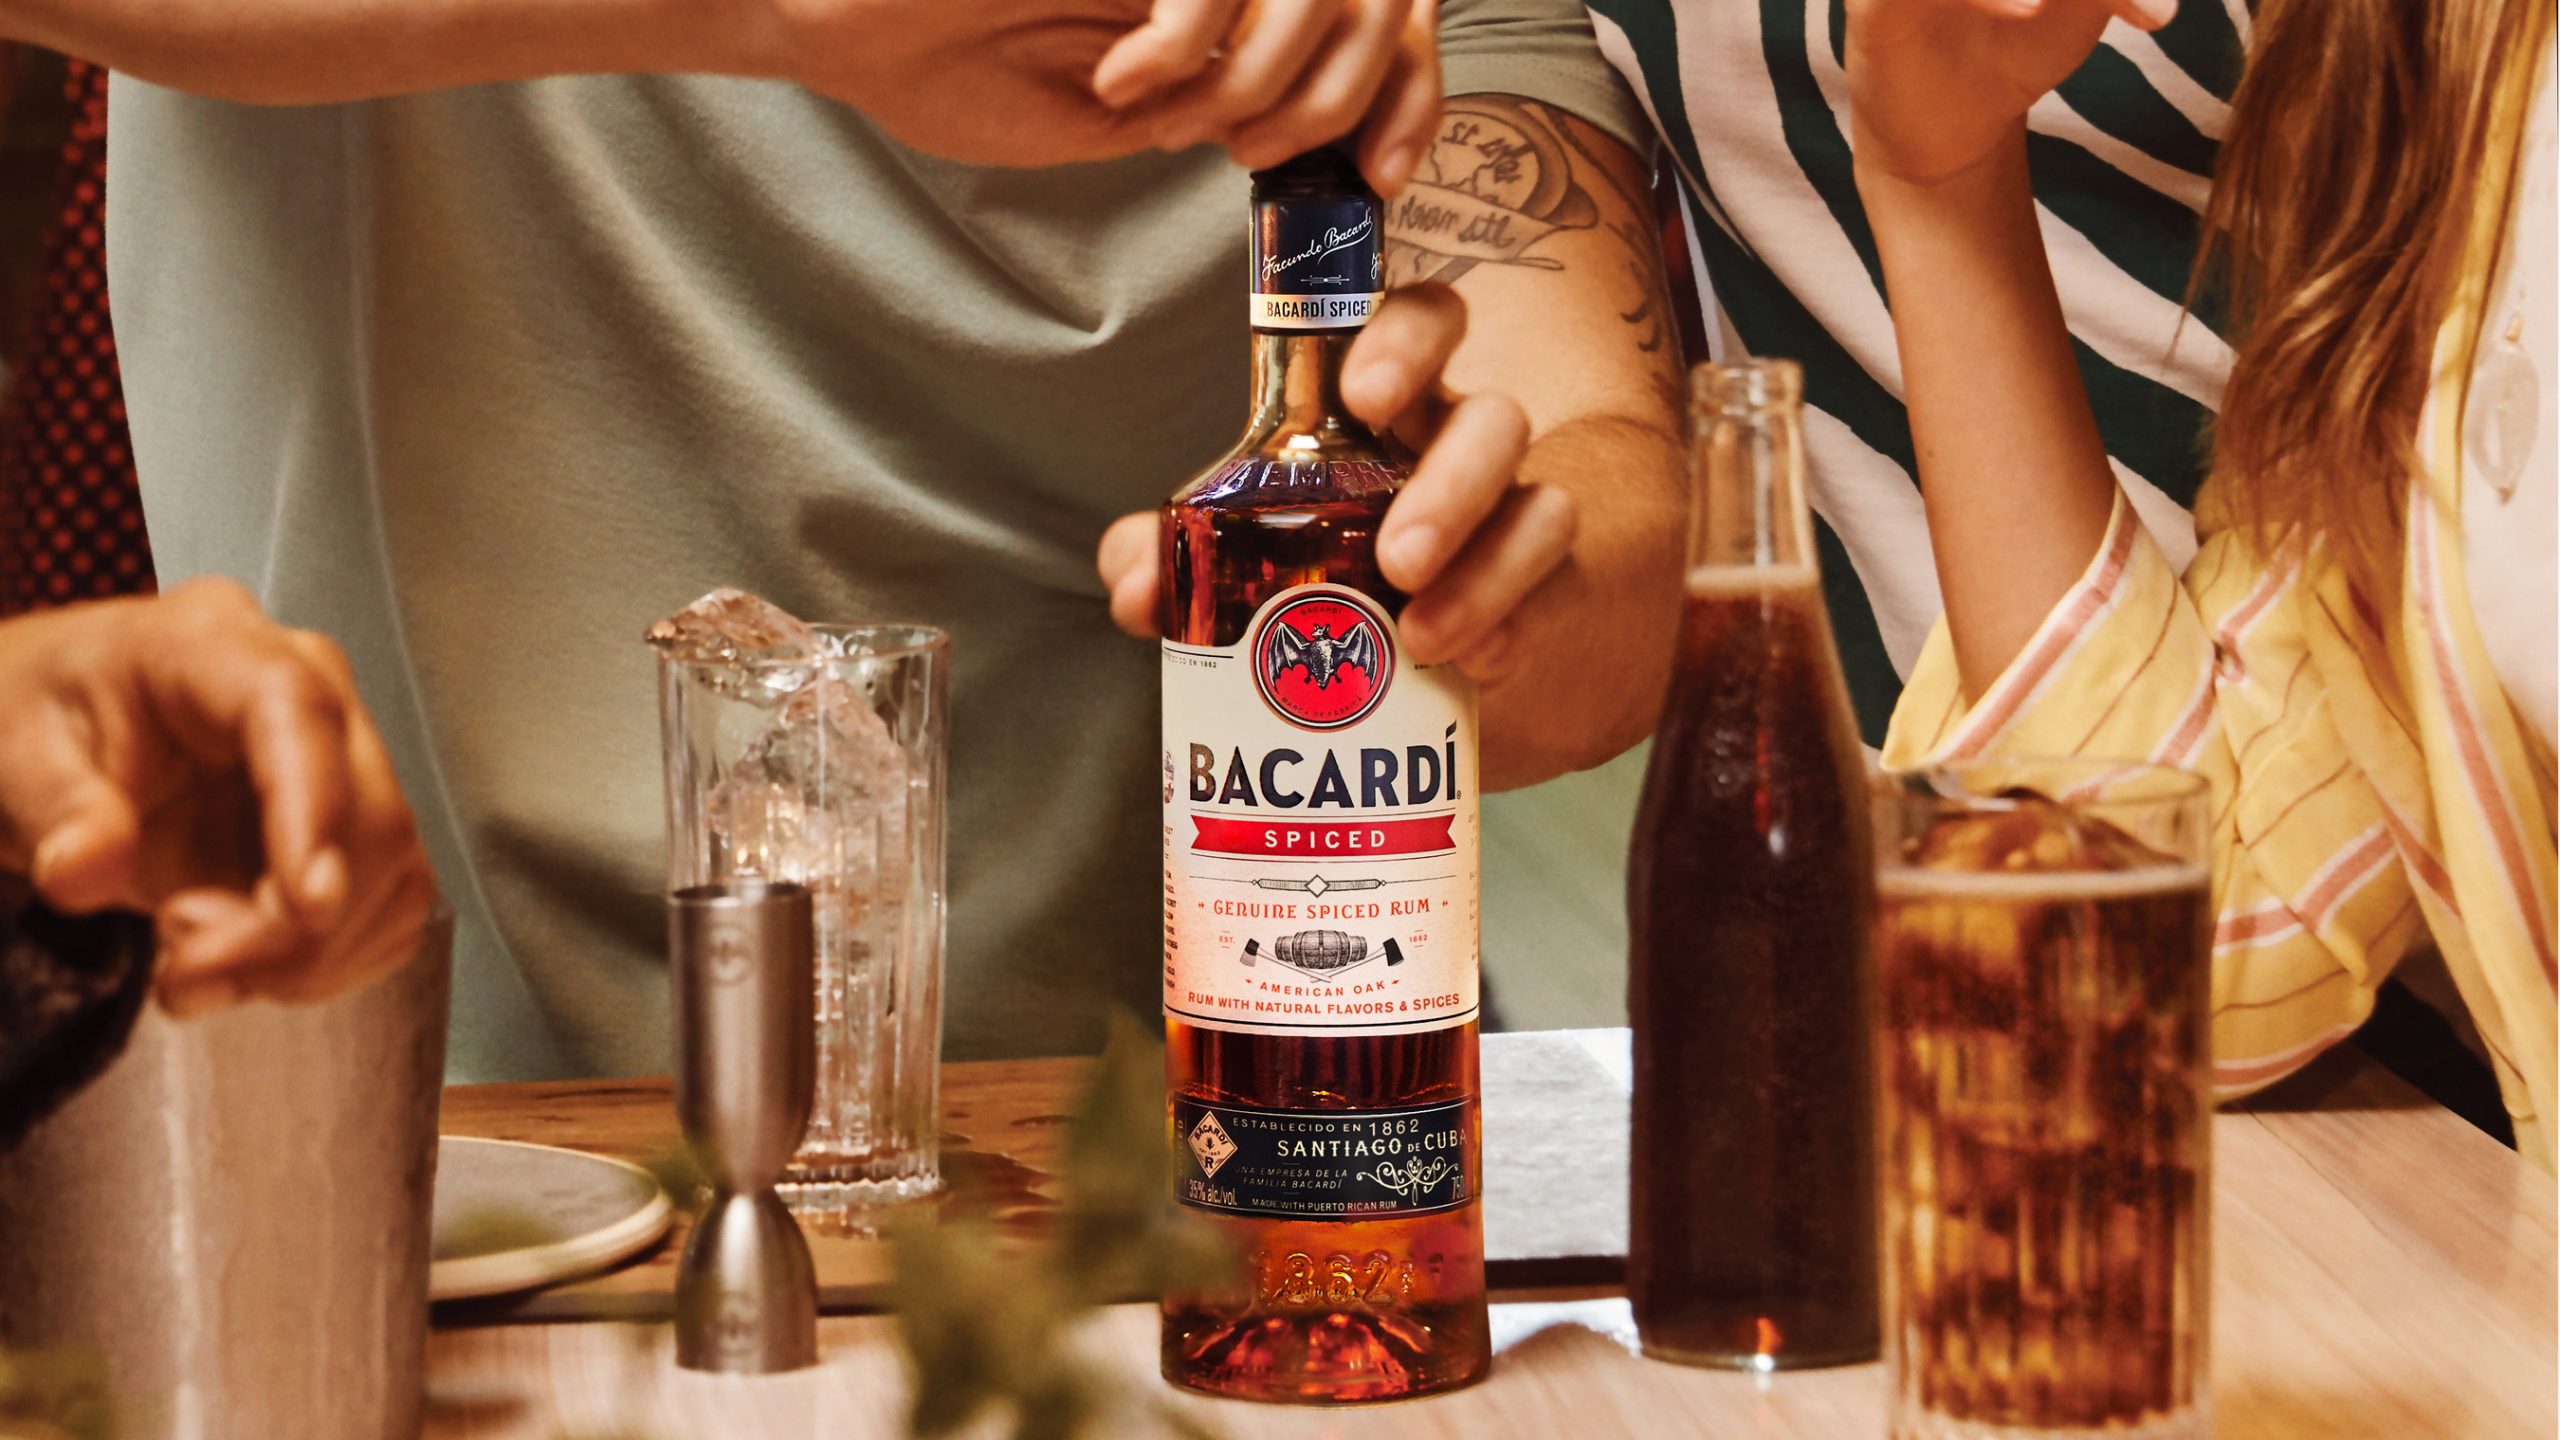 BACARDI Spiced Rum